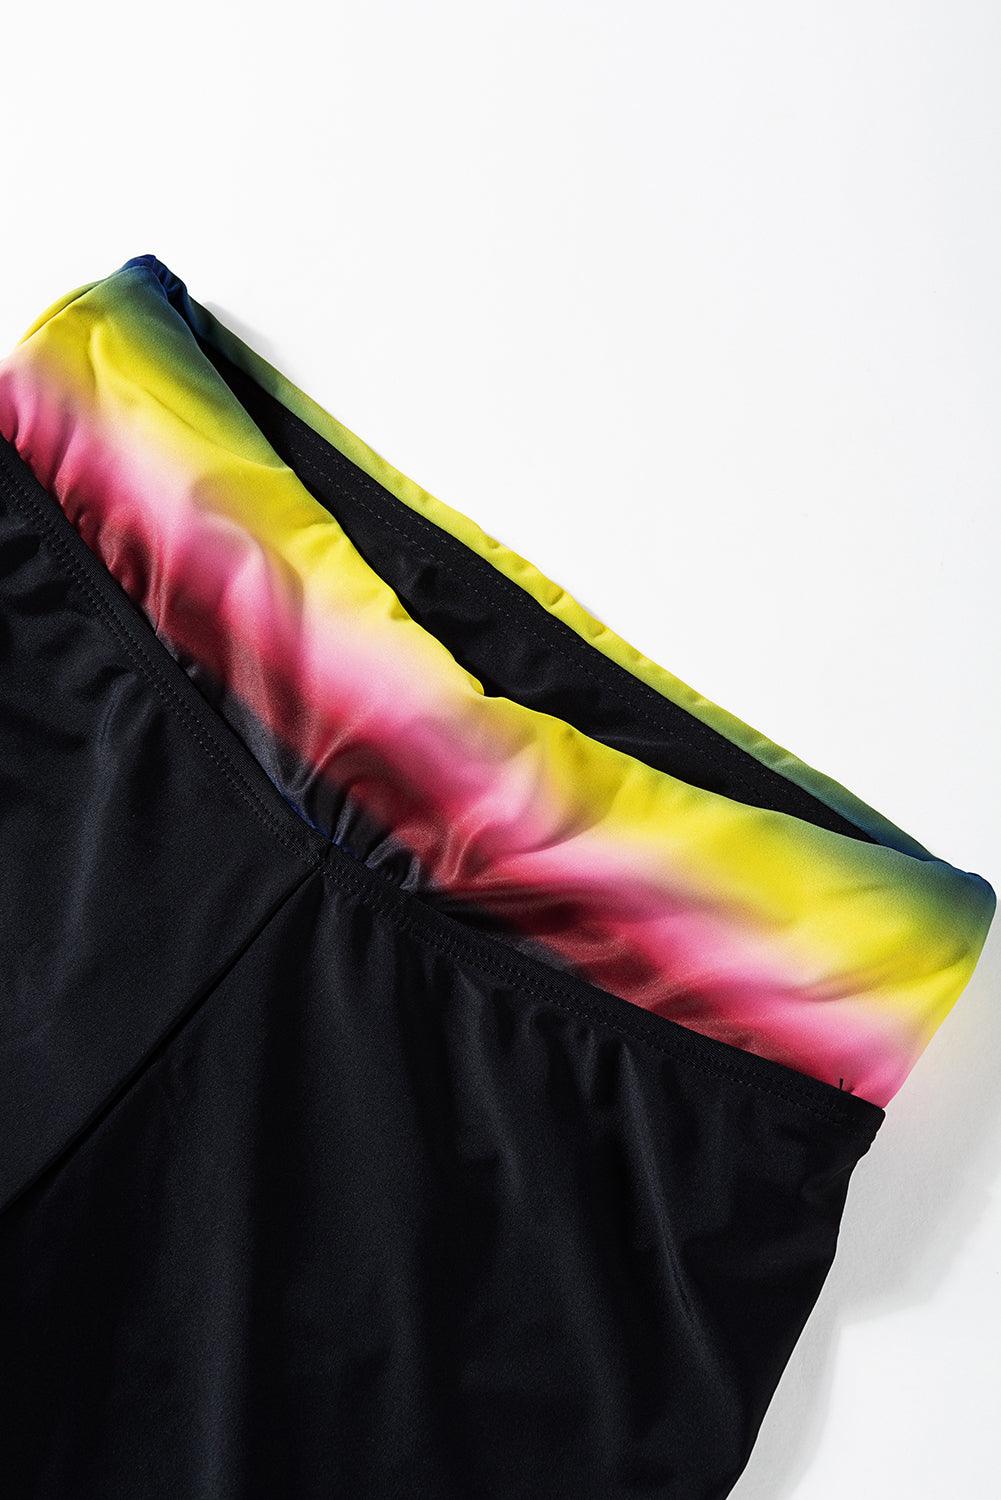 Stripe Floral Print Racerback Tankini Swimsuit - L & M Kee, LLC